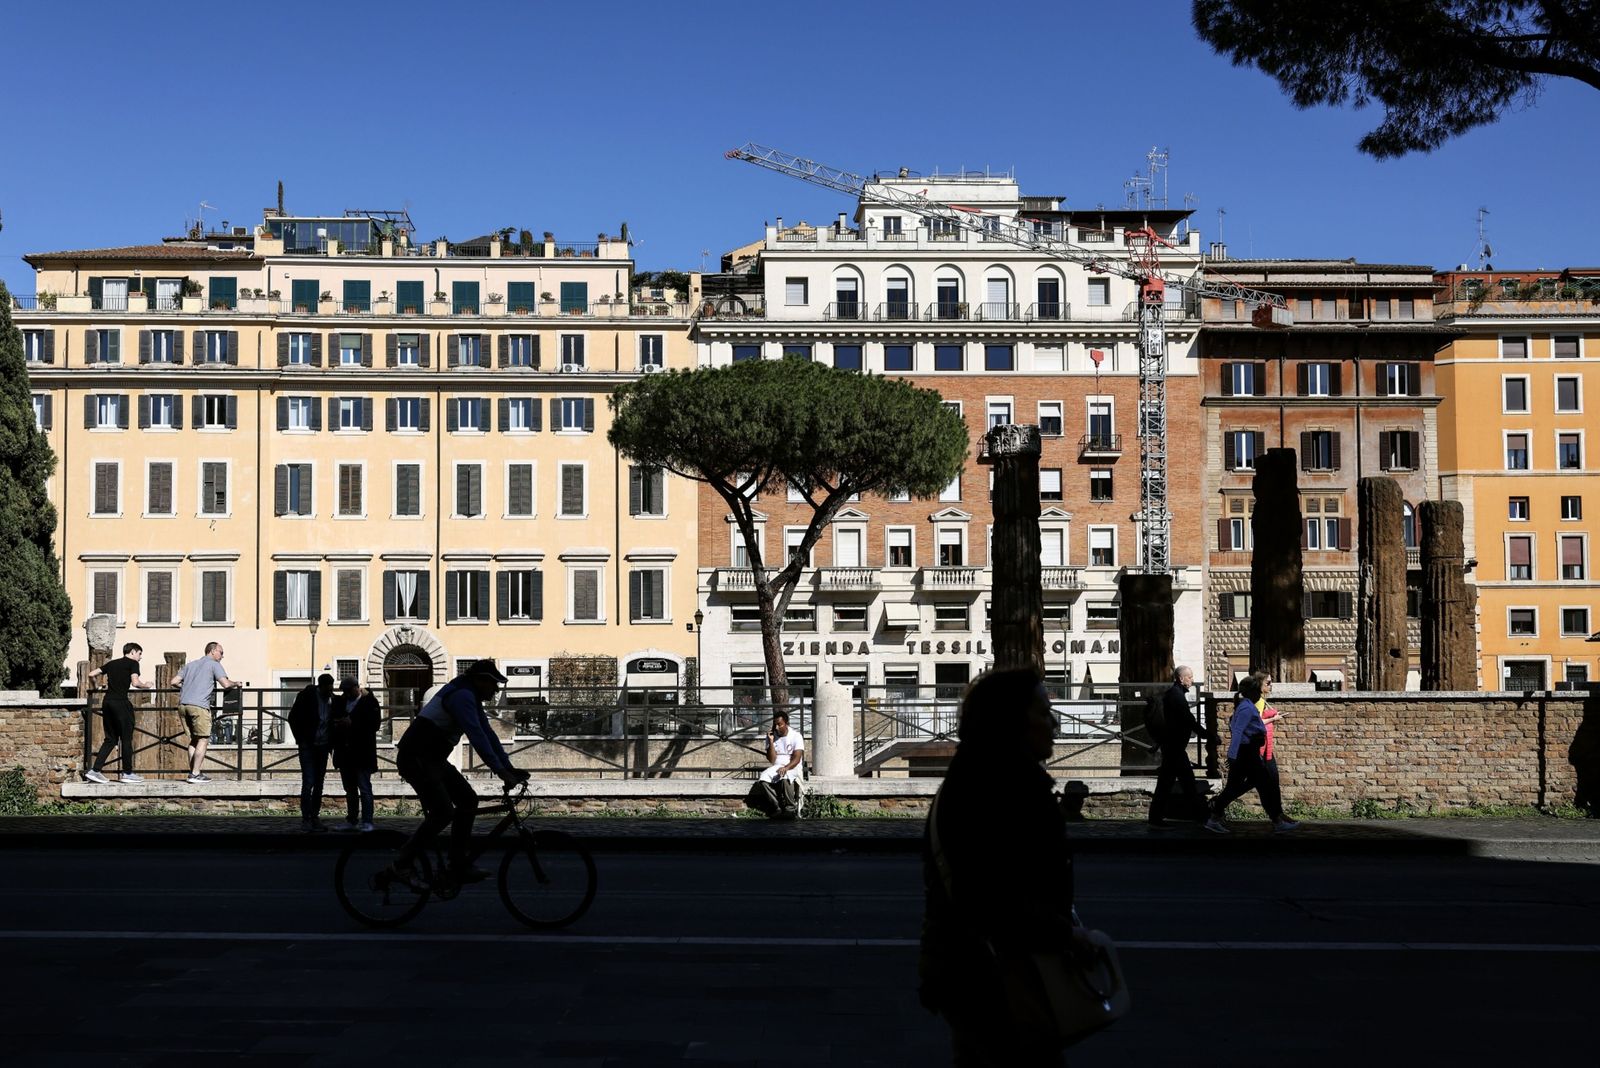 إيطاليا تؤسس صندوقاً سيادياً لدعم قطاعات اقتصادية استراتيجية